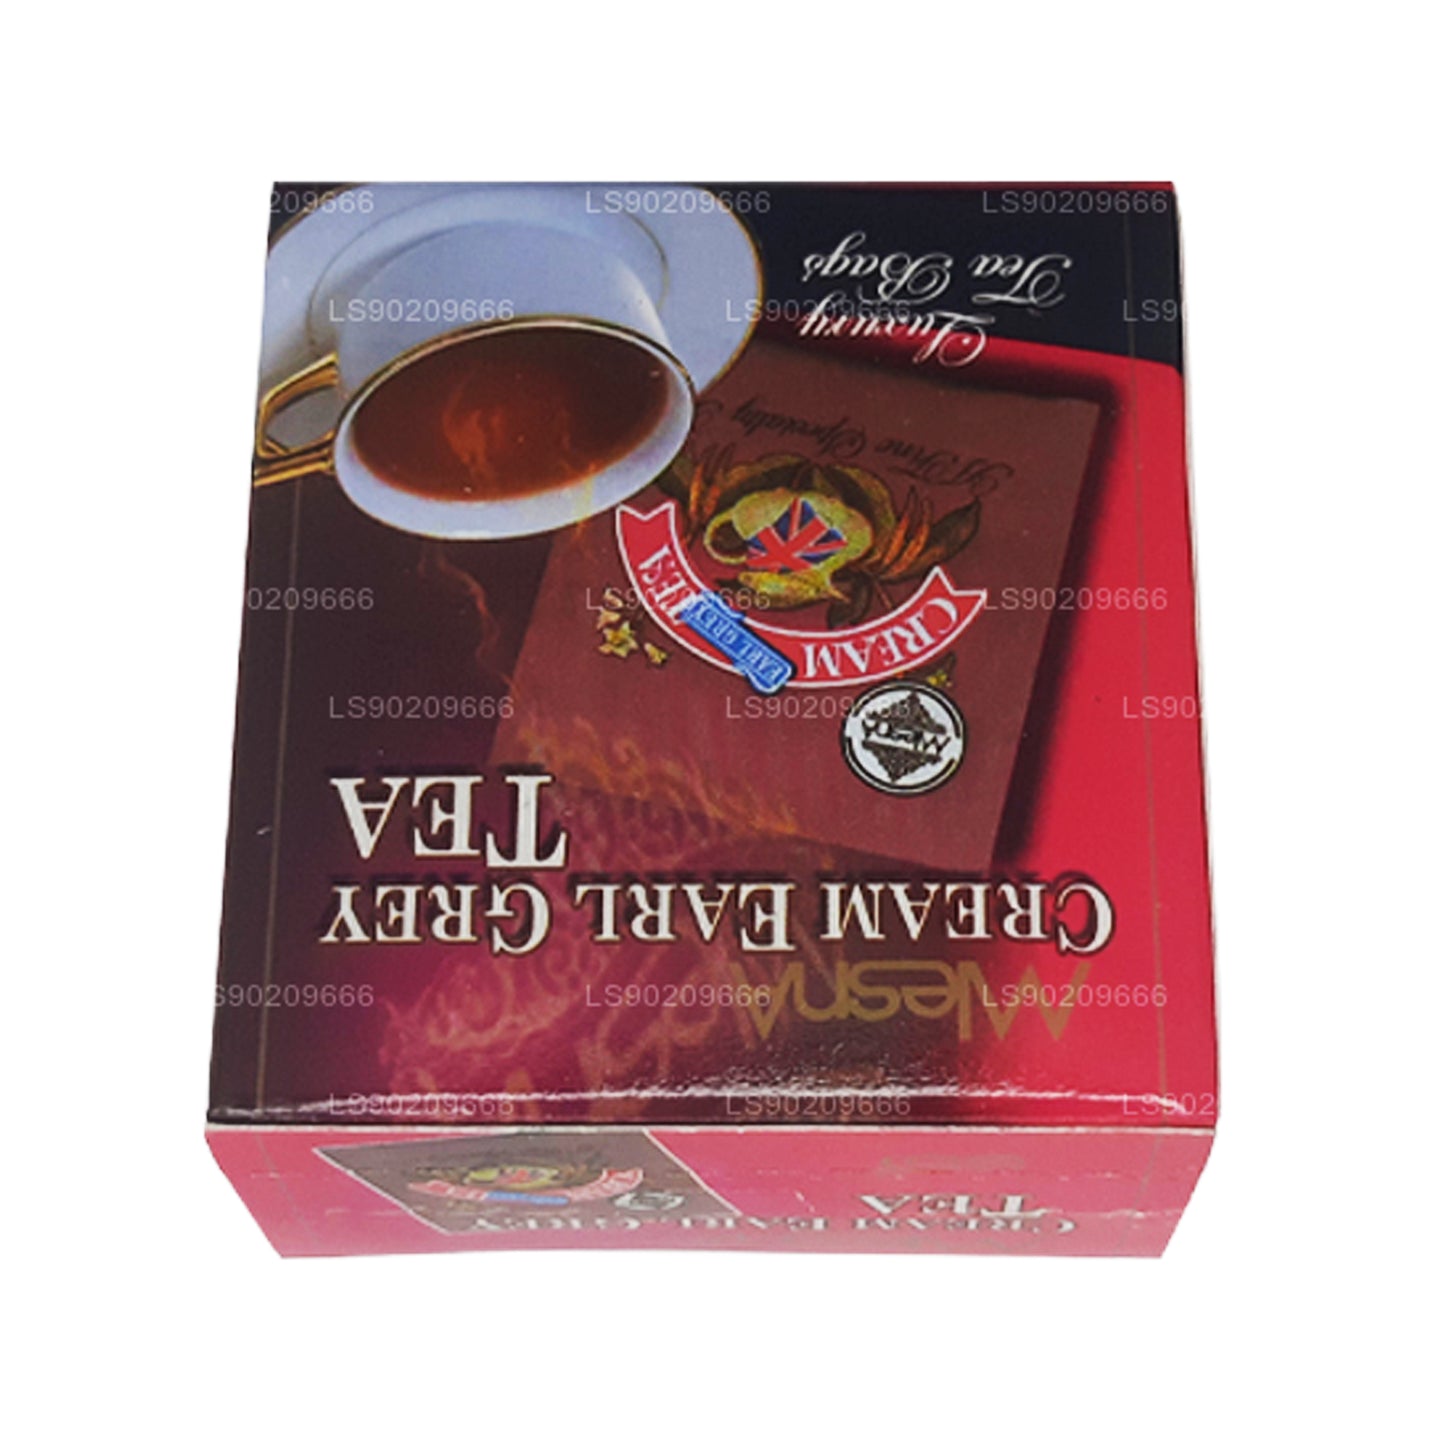 Mlesna Cream Earl Grey Tea (20g) 10 luksusowych torebek na herbatę